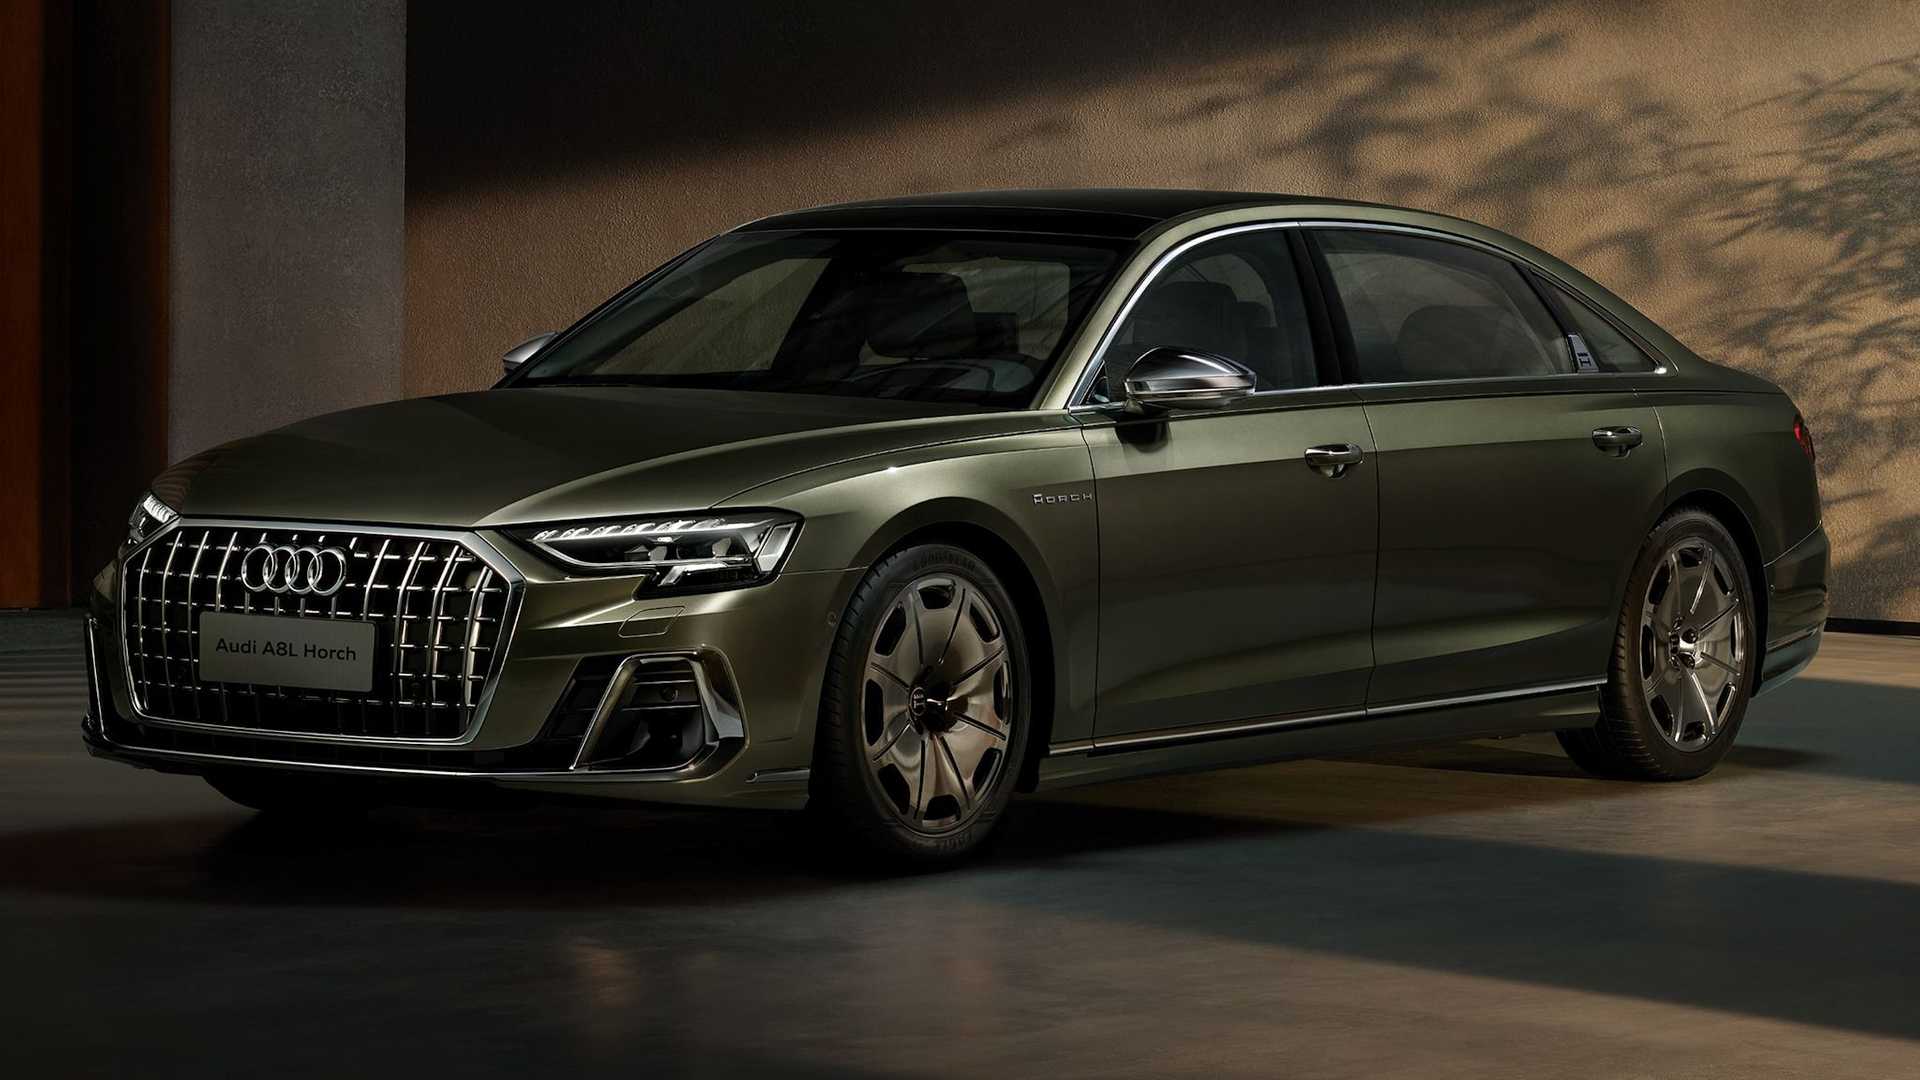 Audi A8 w luksusowej wersji Horch przed premierą - oficjalne zdjęcia